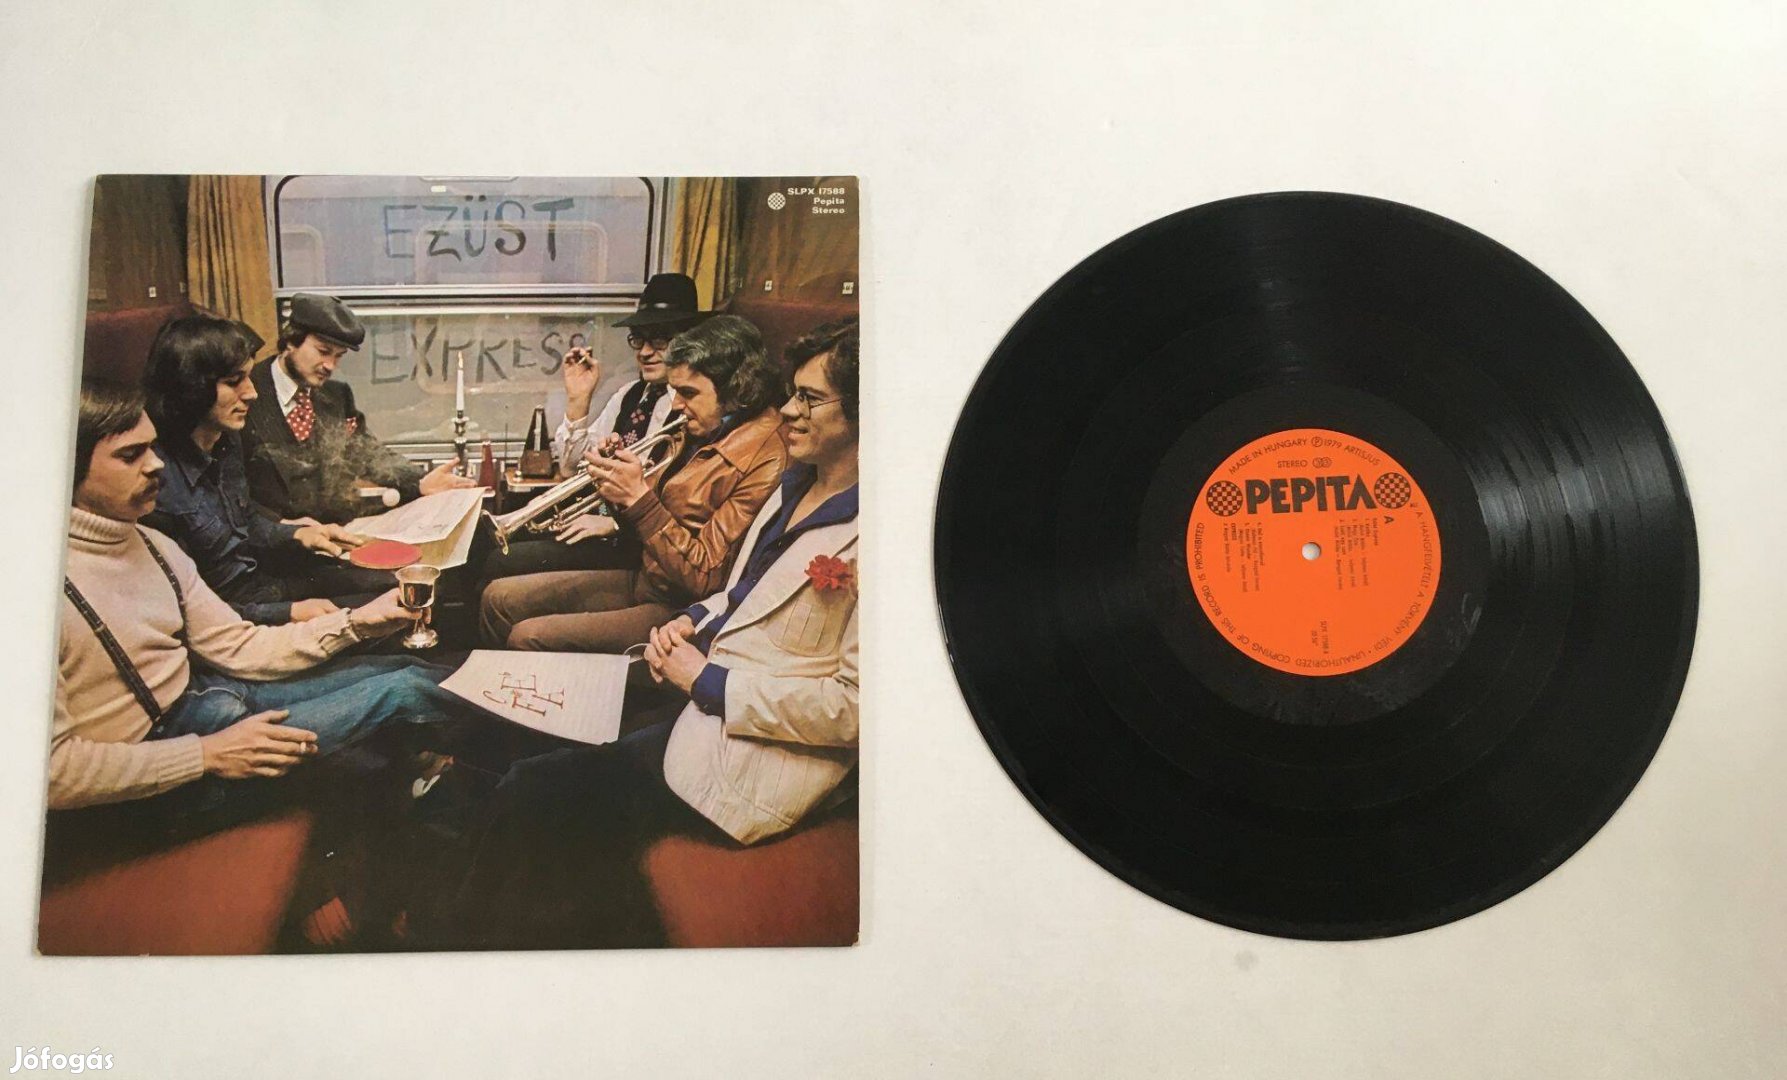 Express: Ezüst express, retro bakelit nagylemez, vinyl - 1979